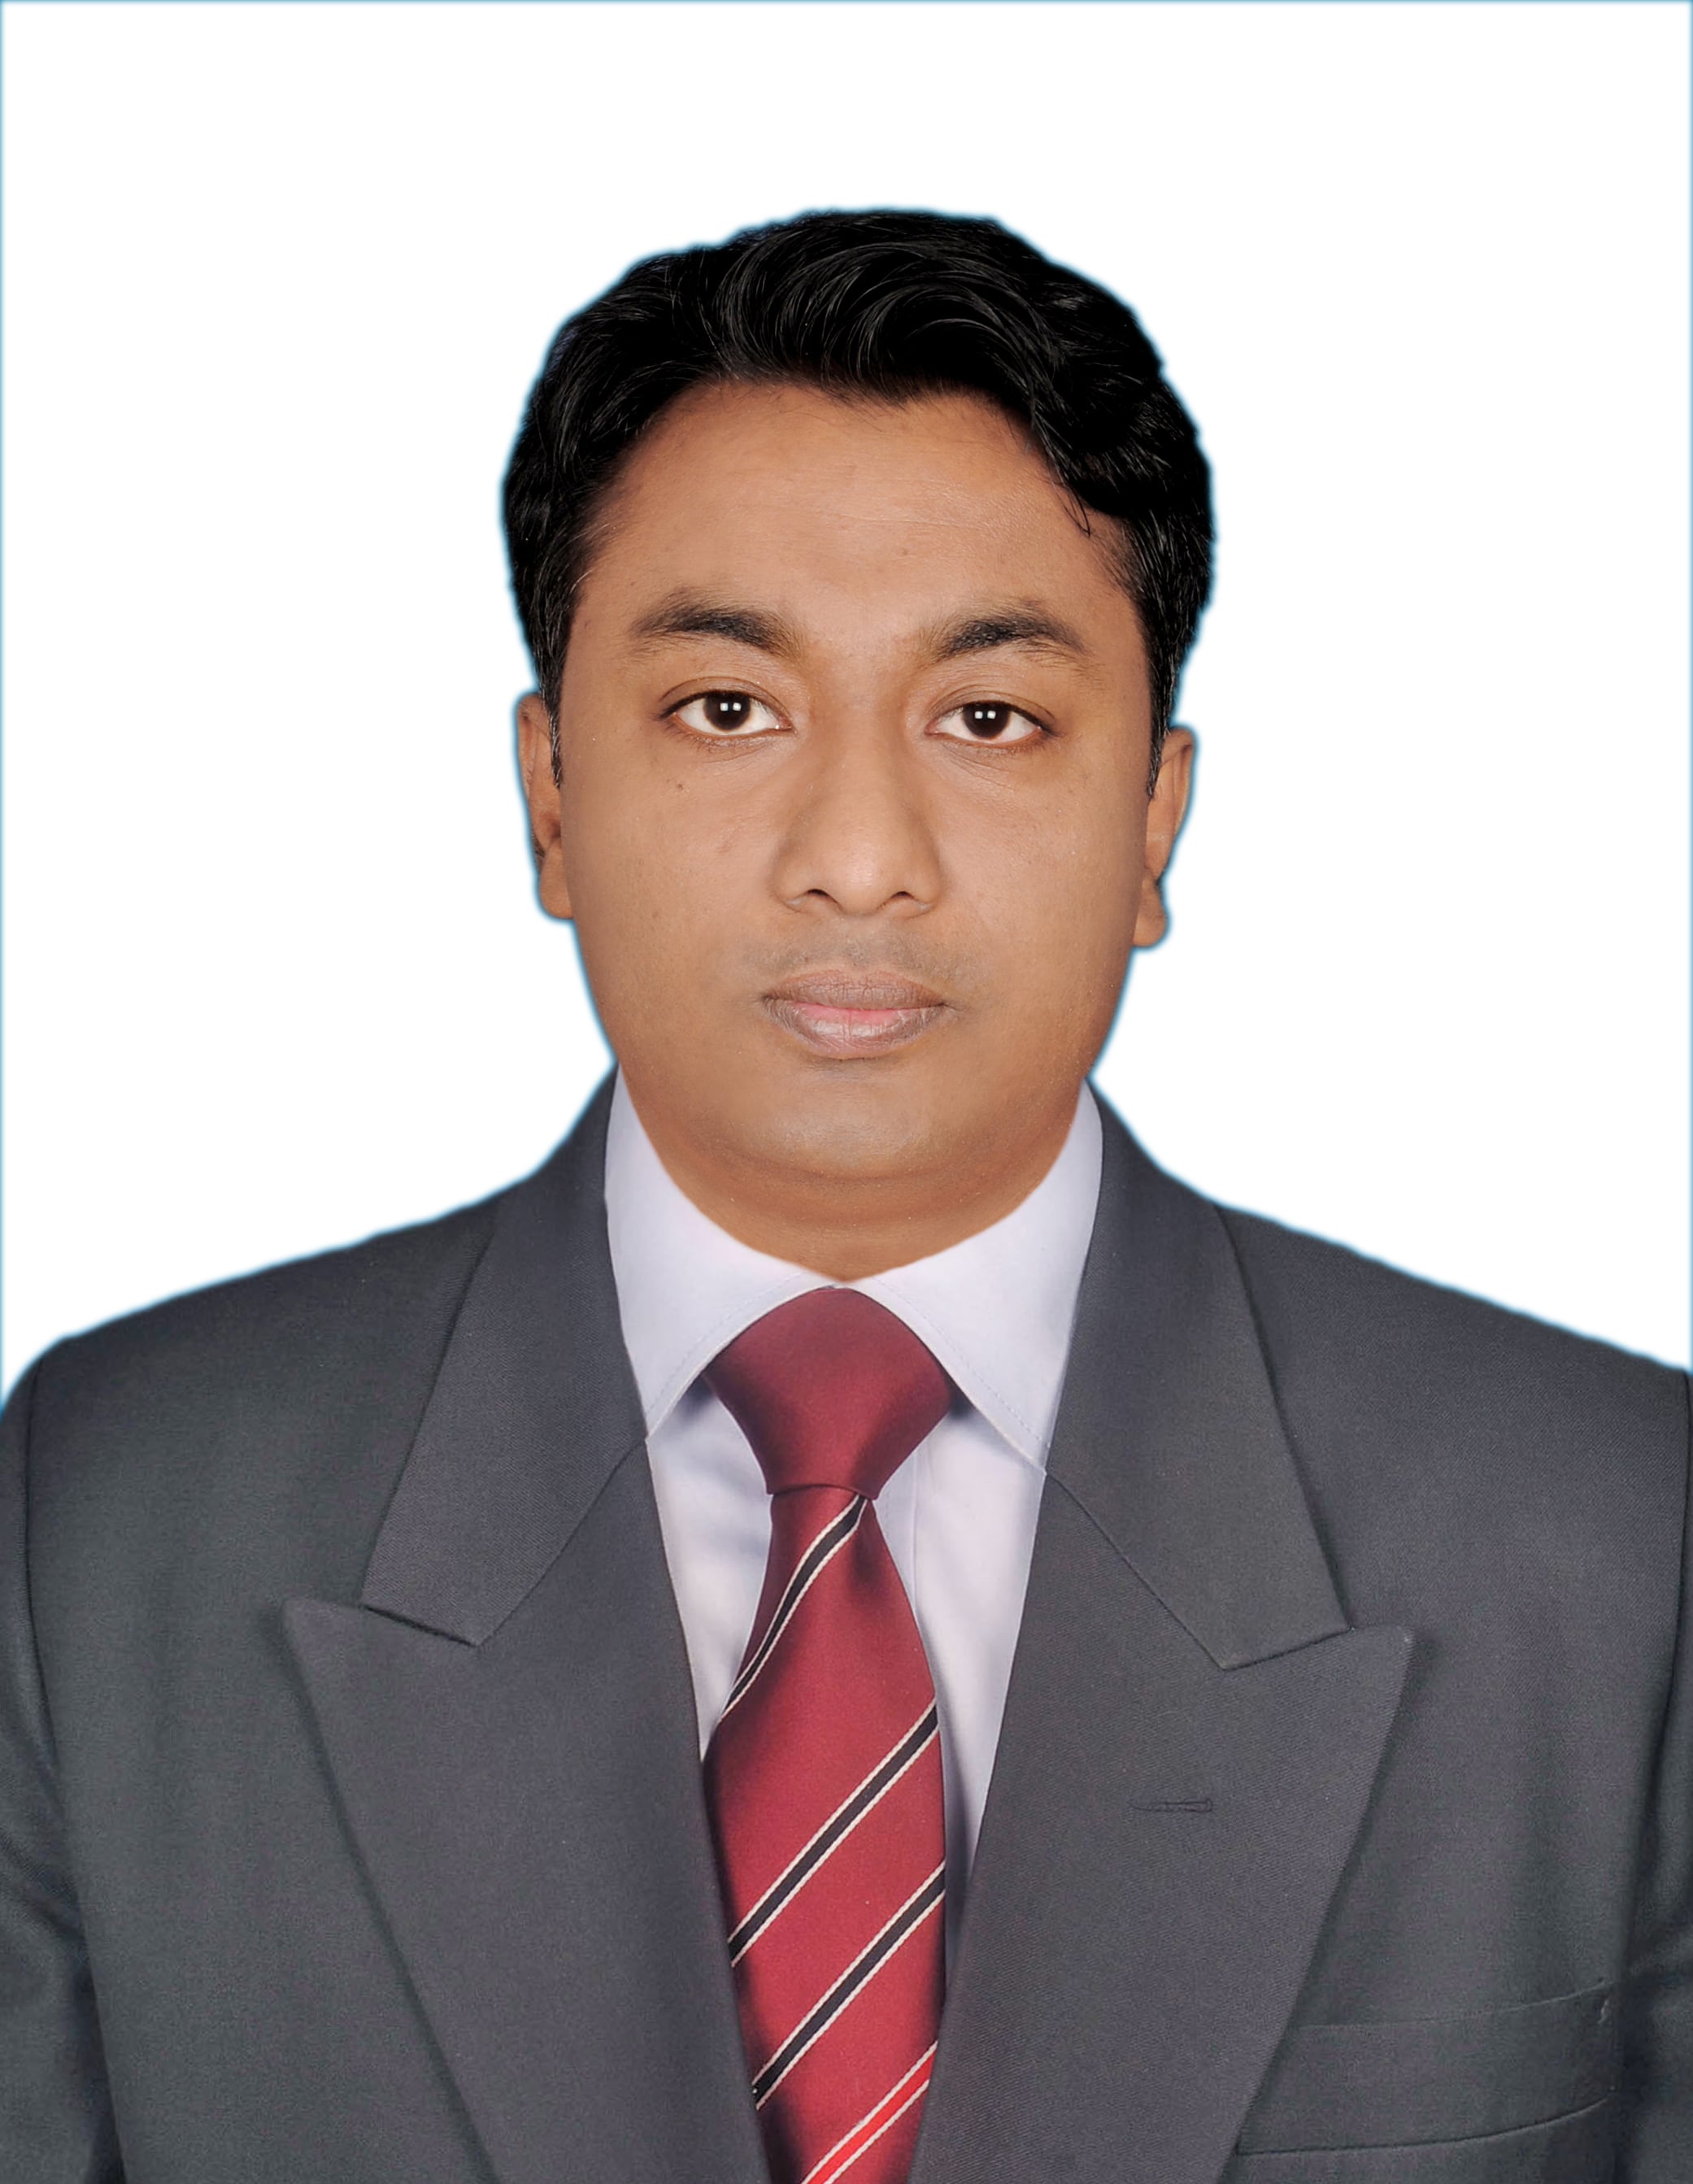 MD. Mahbubur Rahman